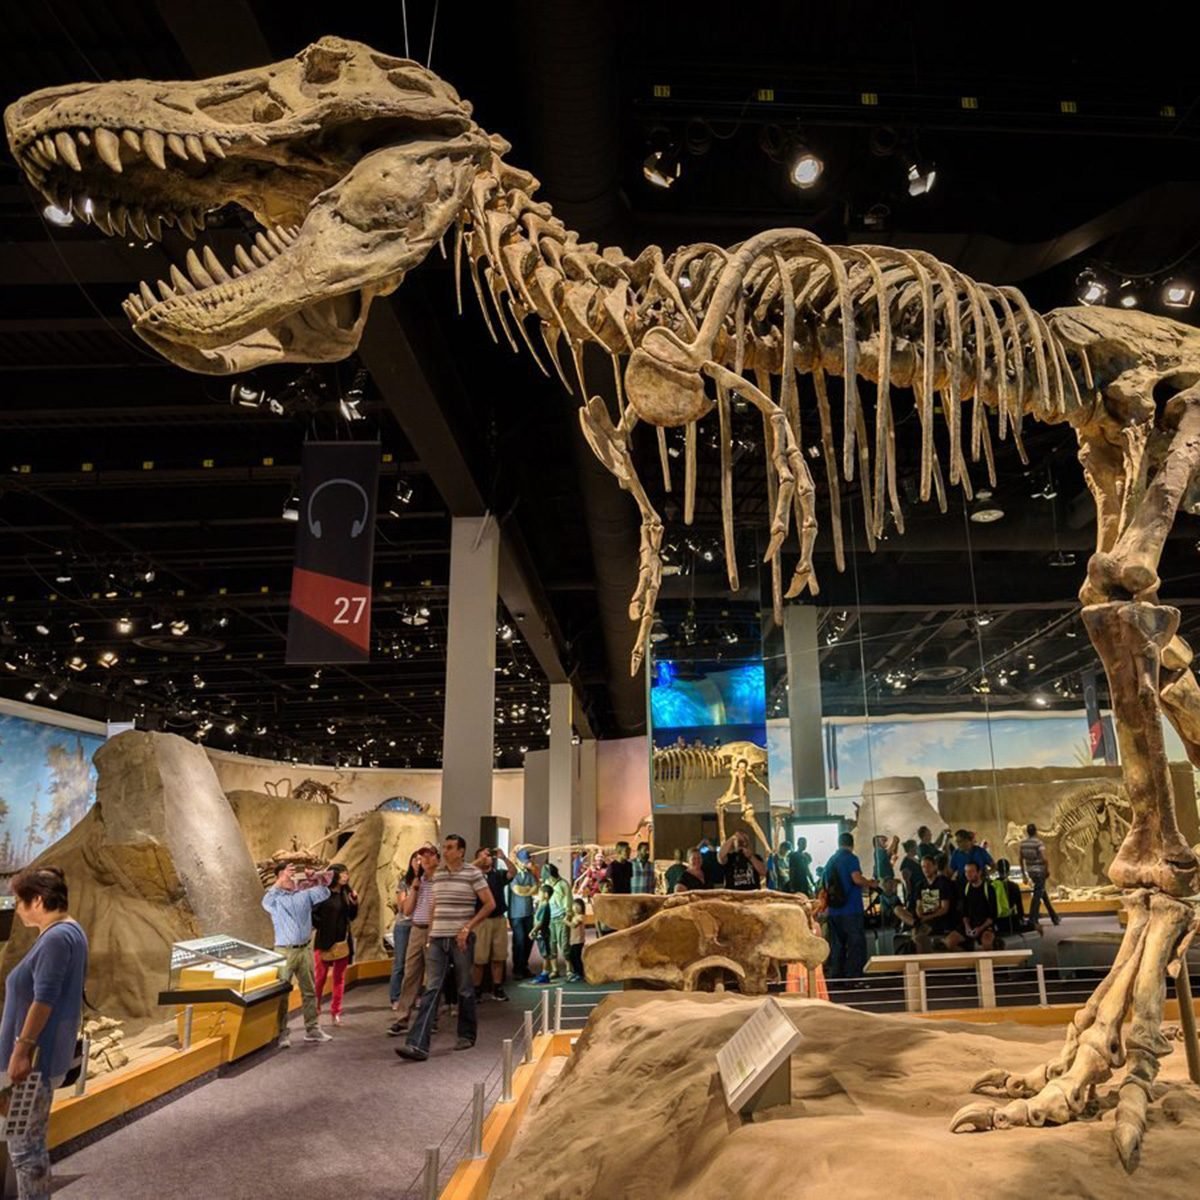 Des ossements de dinosaure découverts lors d'un tour guidé sur les fossiles